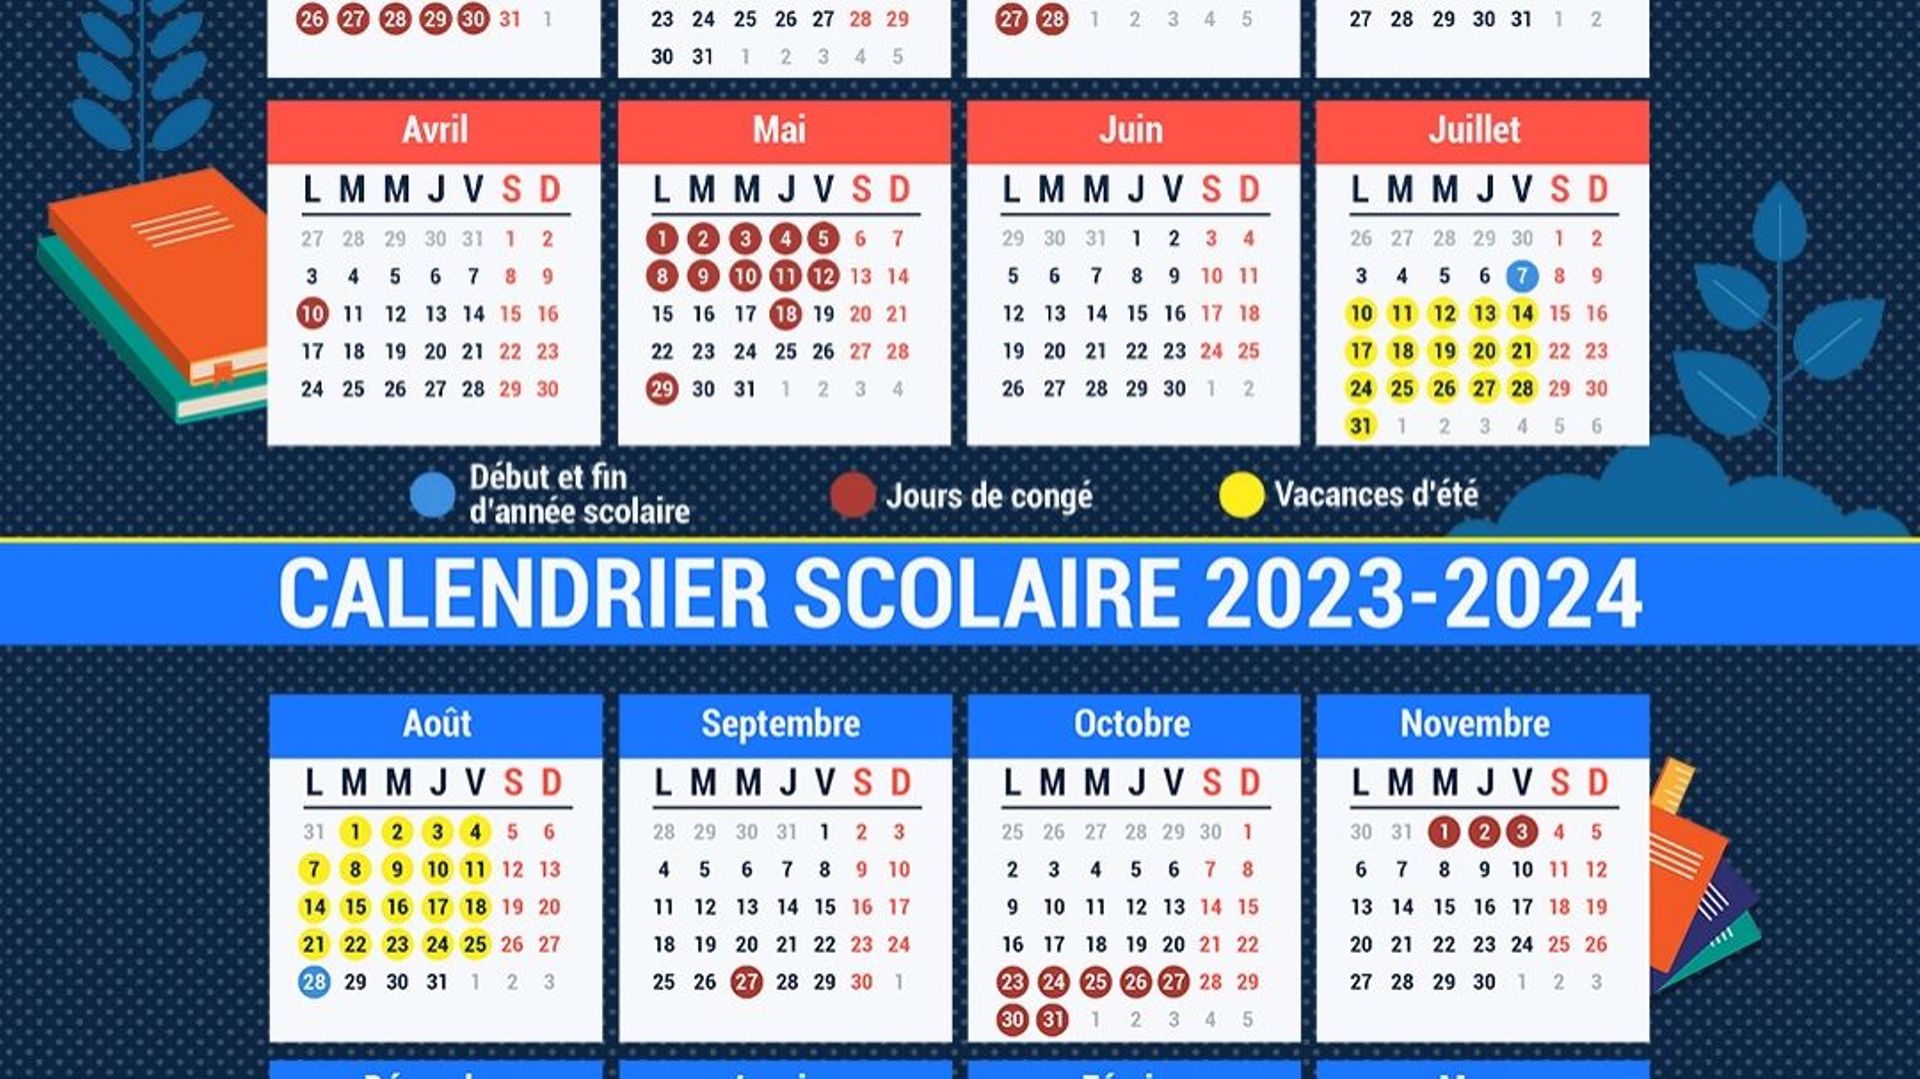 Agenda 2023 2024 Scolaire pour Fille: De Septembre 2023 à juillet